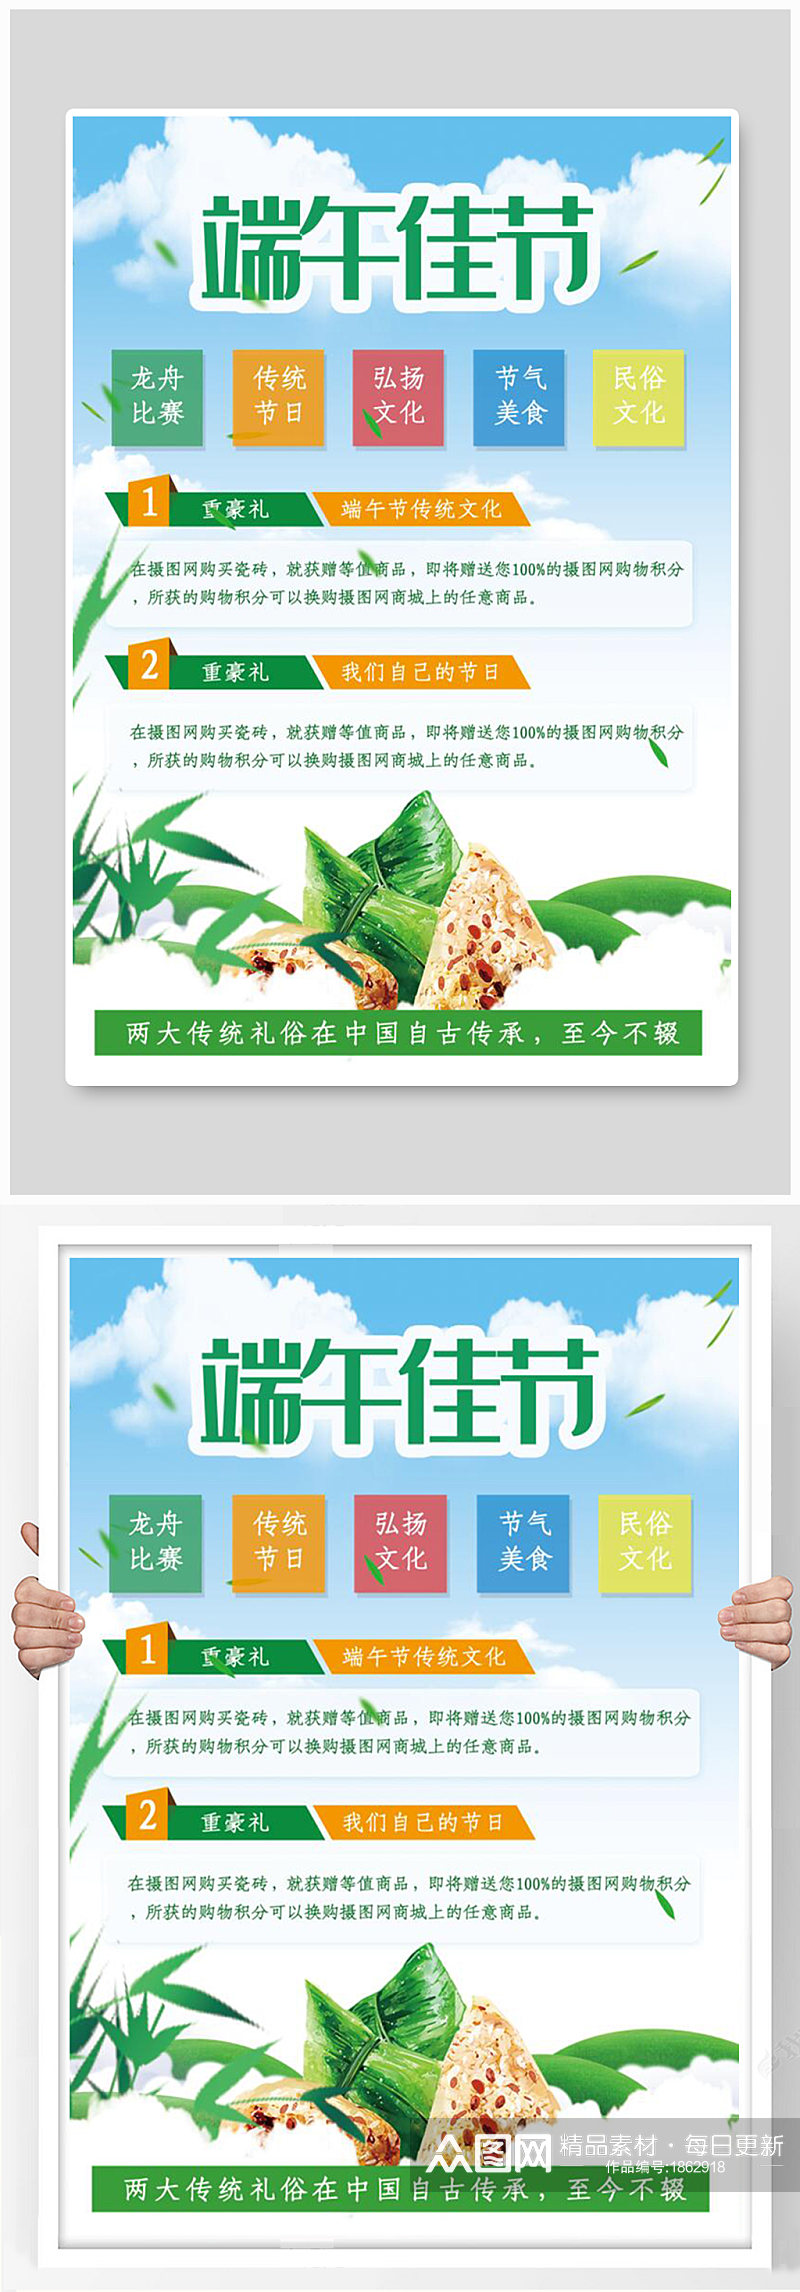 大气端午节粽子促销宣传单素材